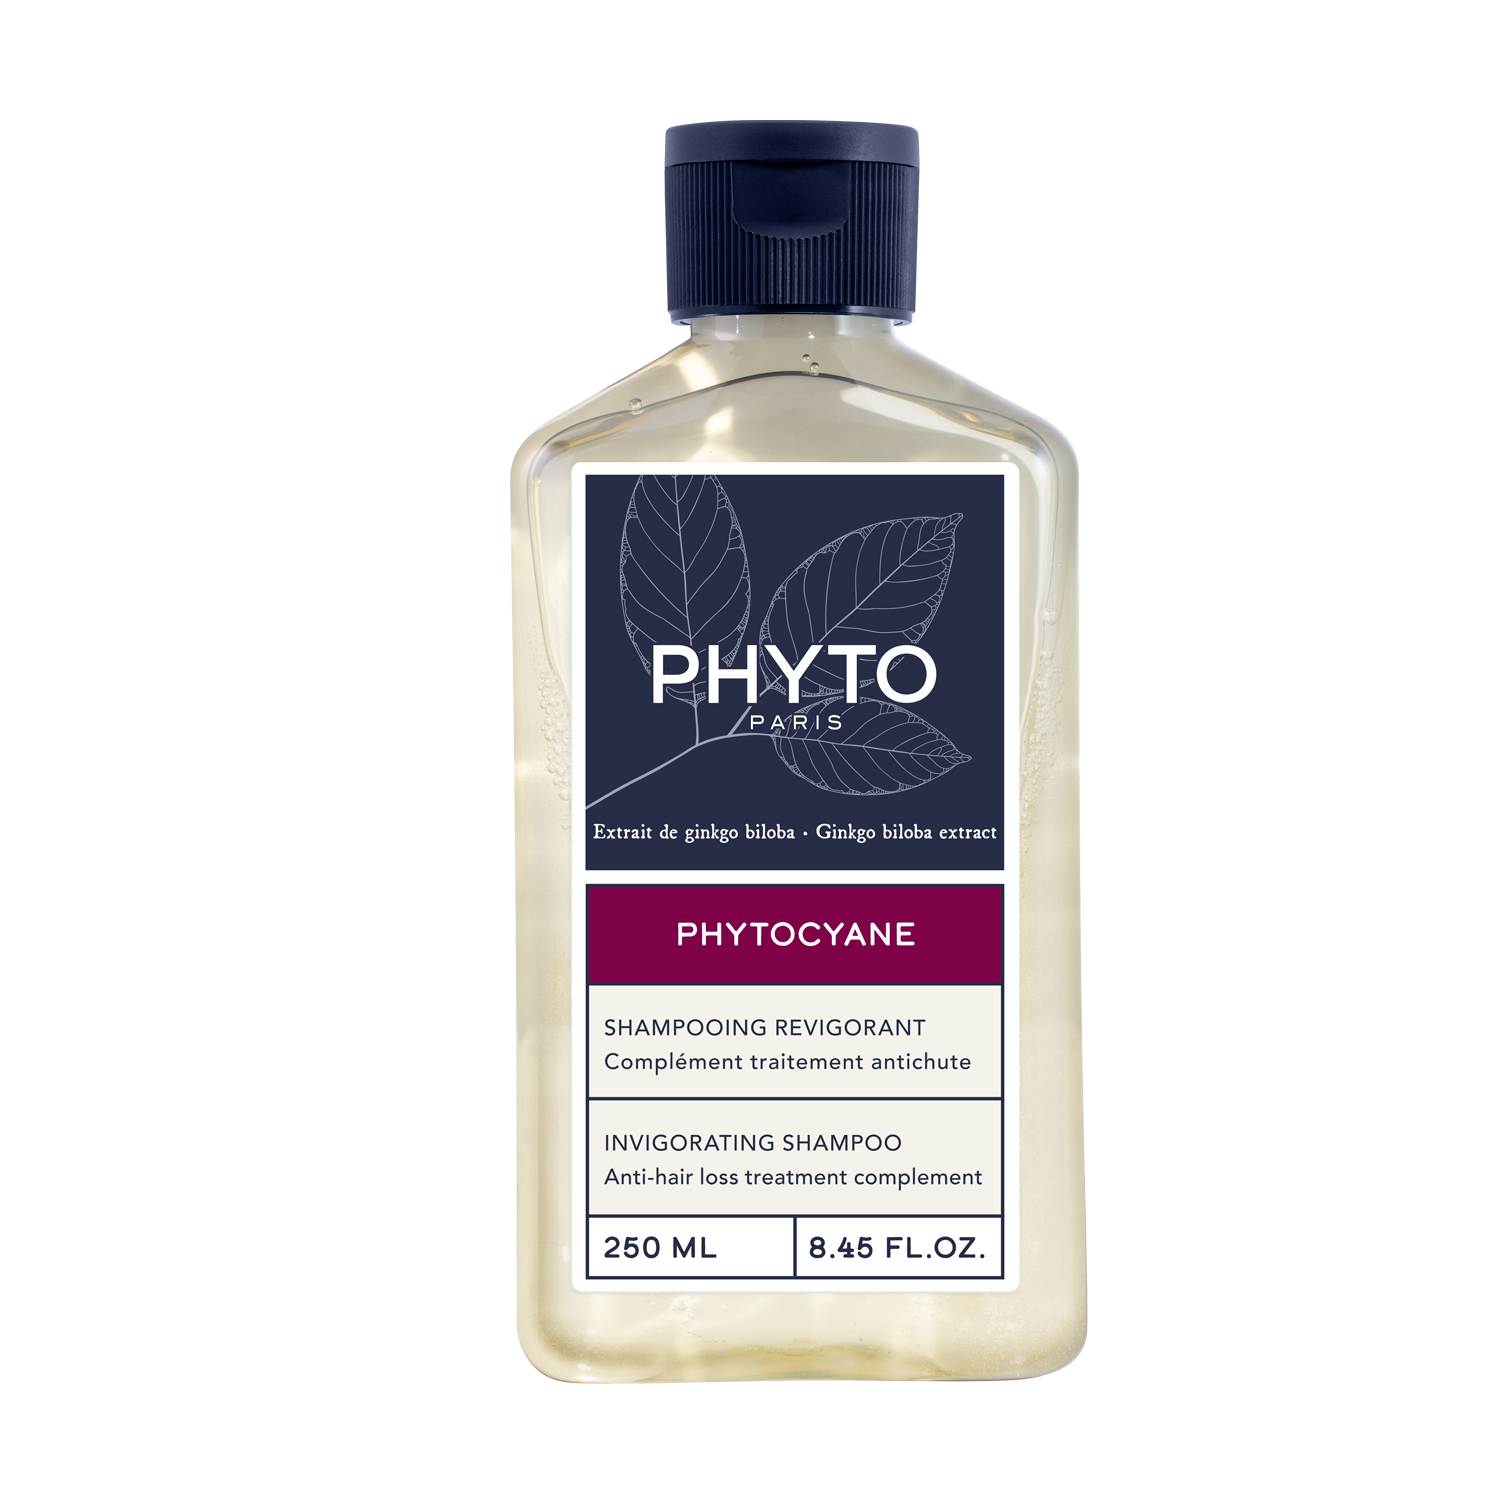 PHYTO PHYTOCYANE-MEN мужской укрепляющий шампунь для волос 200мл цена и фото